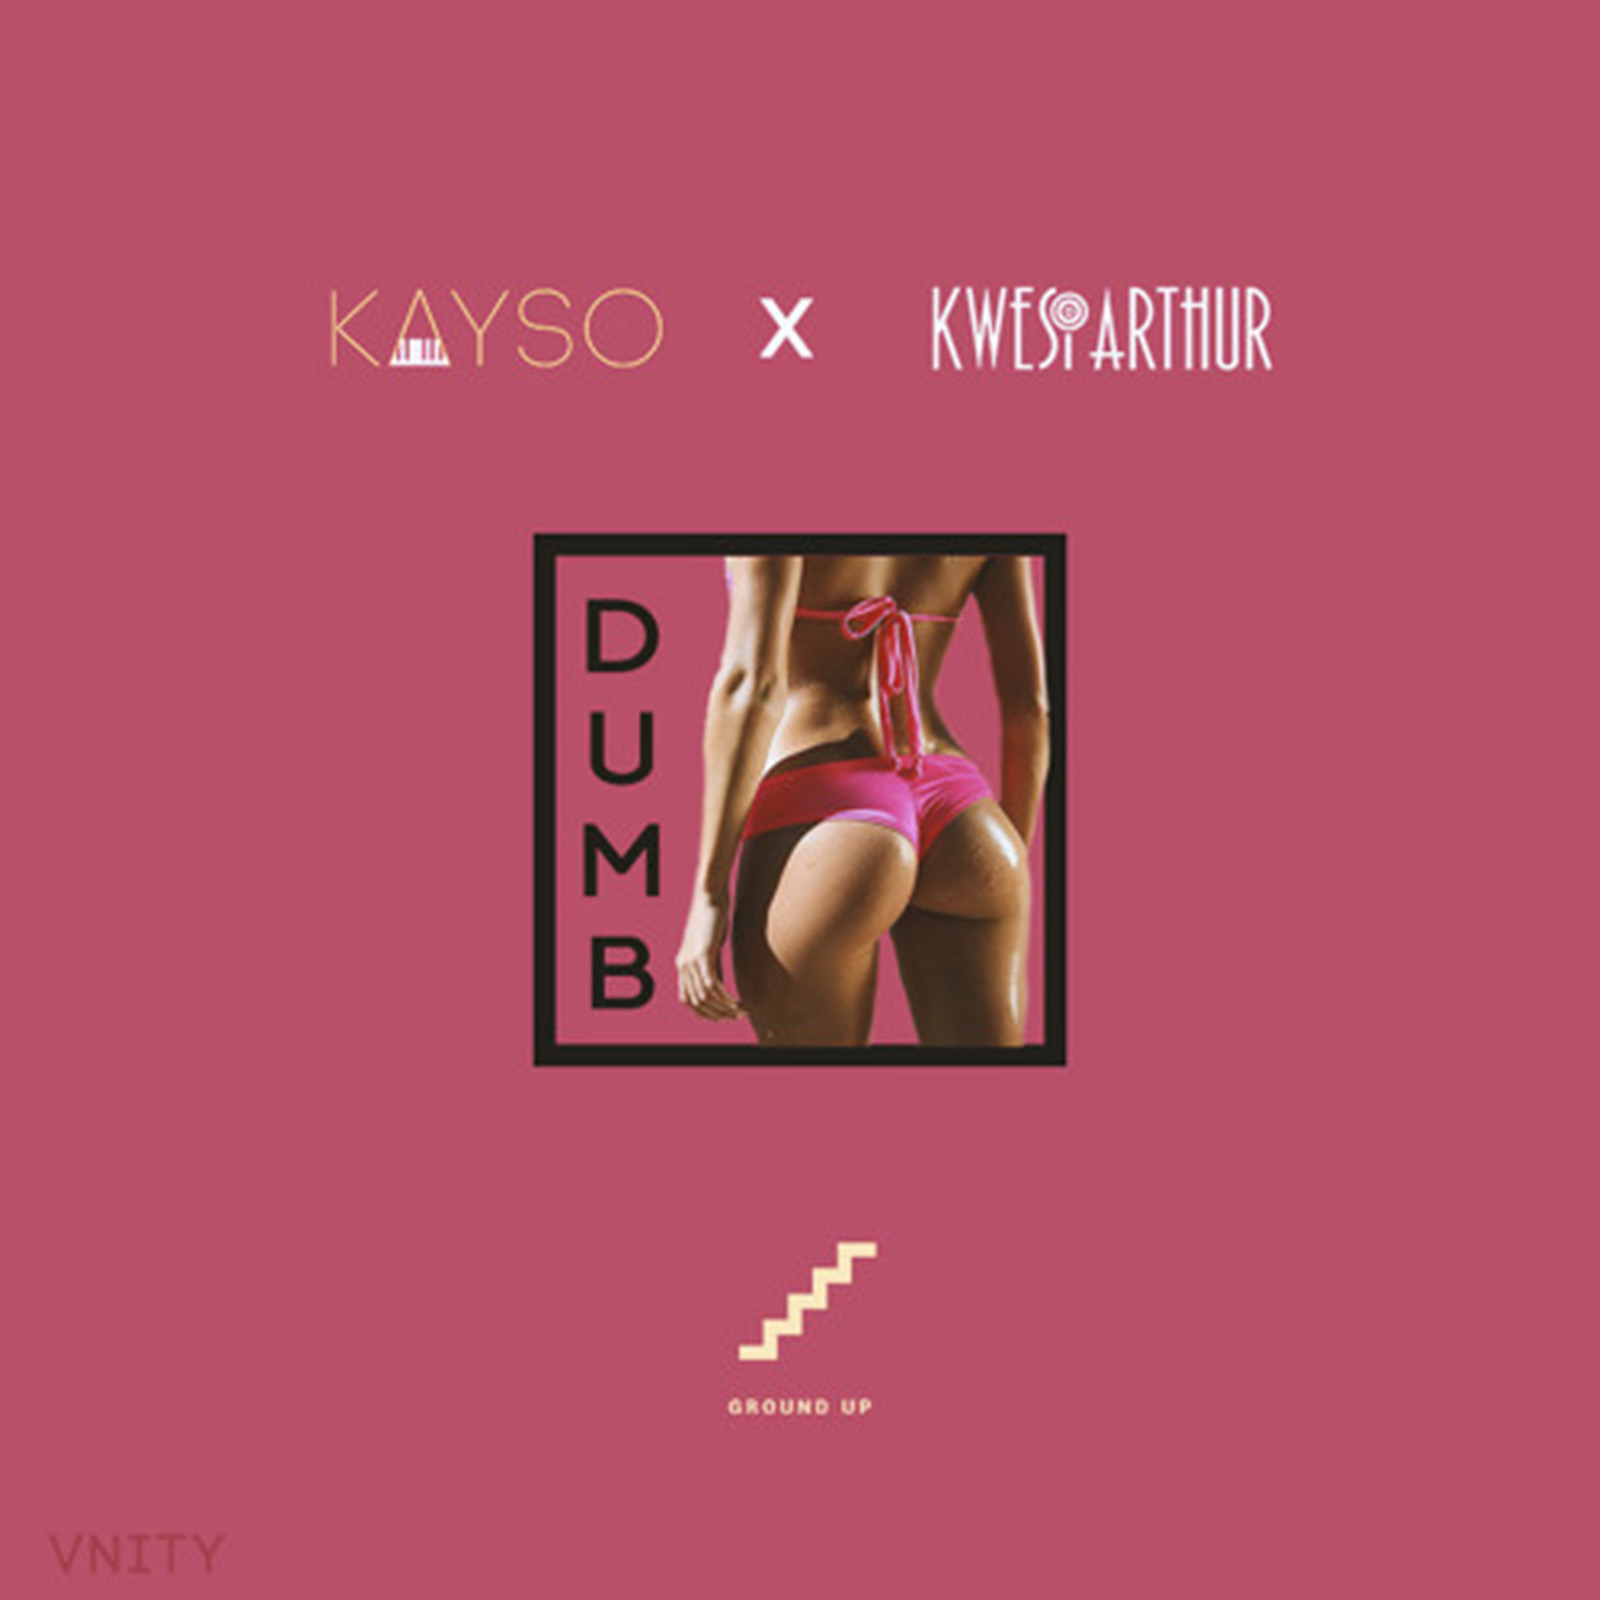 Dumb by KaySo & Kwesi Arthur